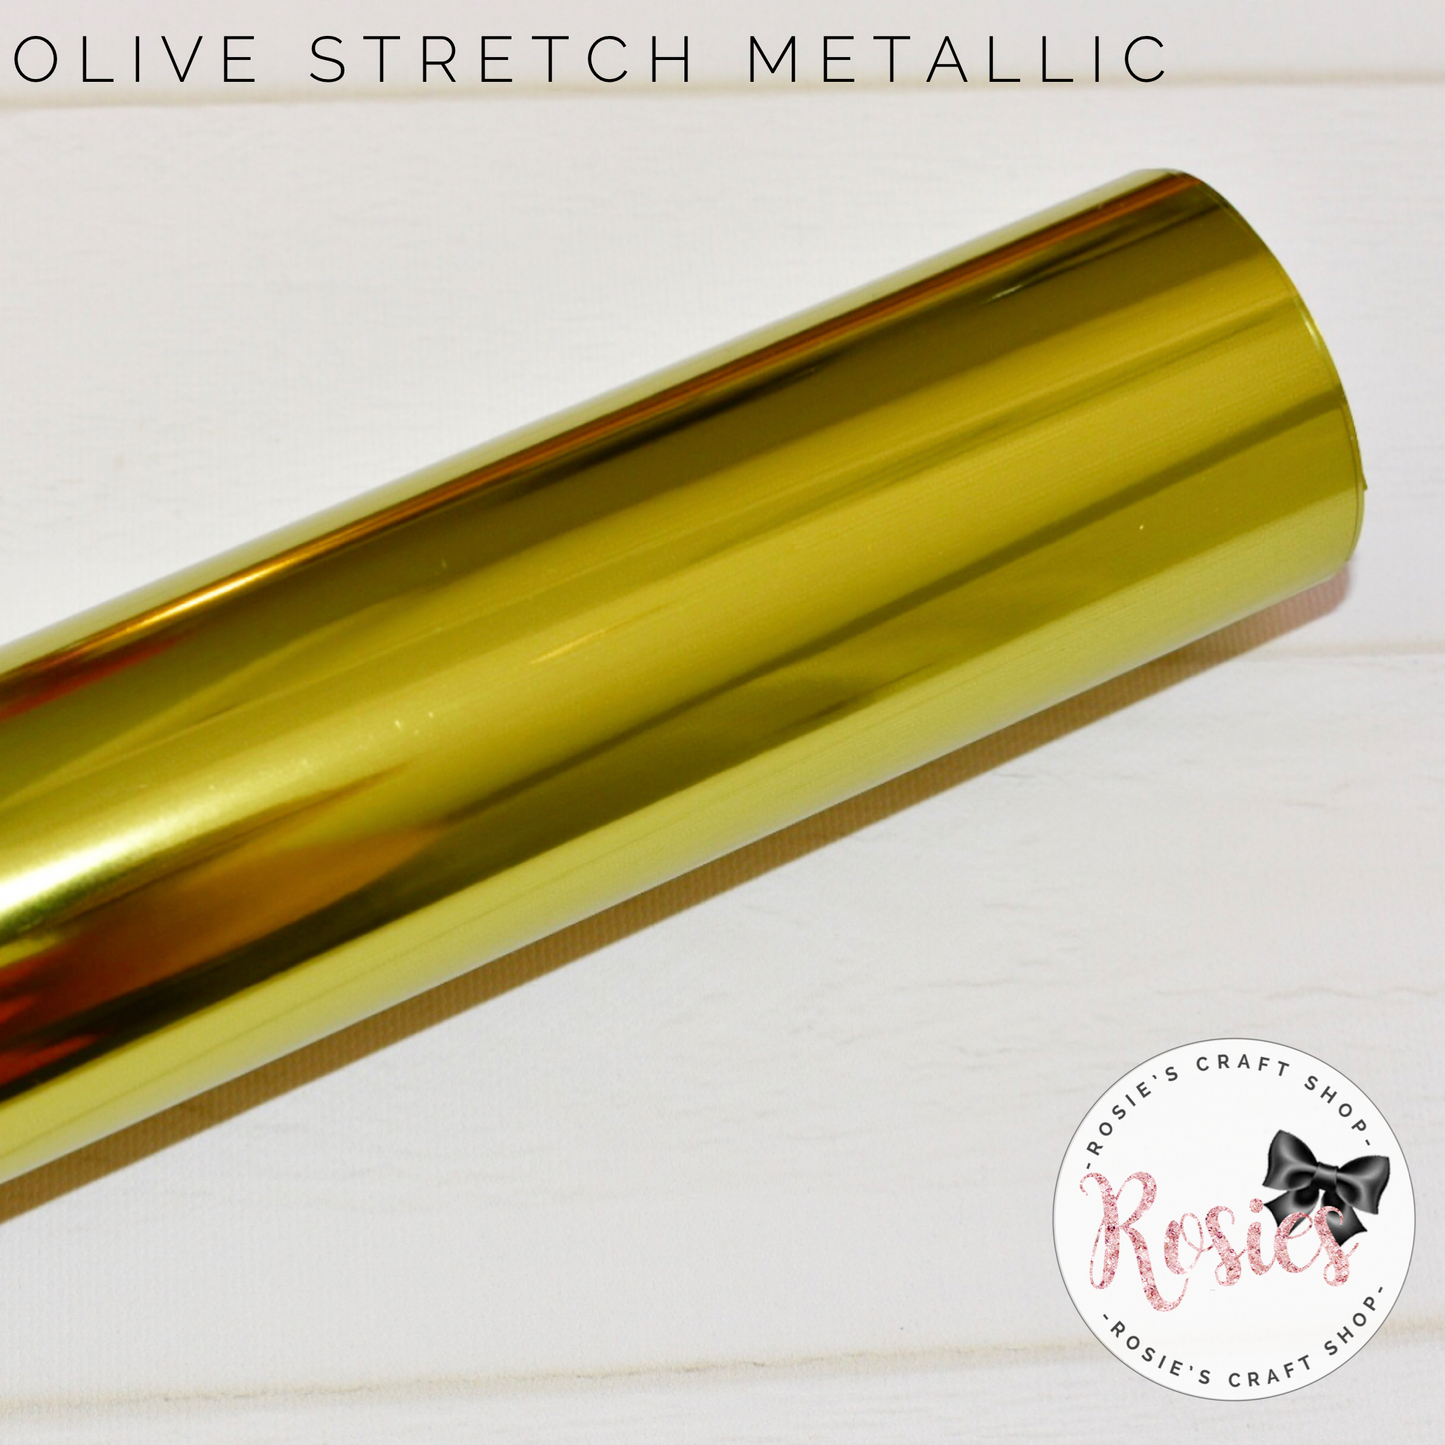 Olive Green Metallic Stretch Iron On Vinyl HTV - Rosie's Craft Shop Ltd